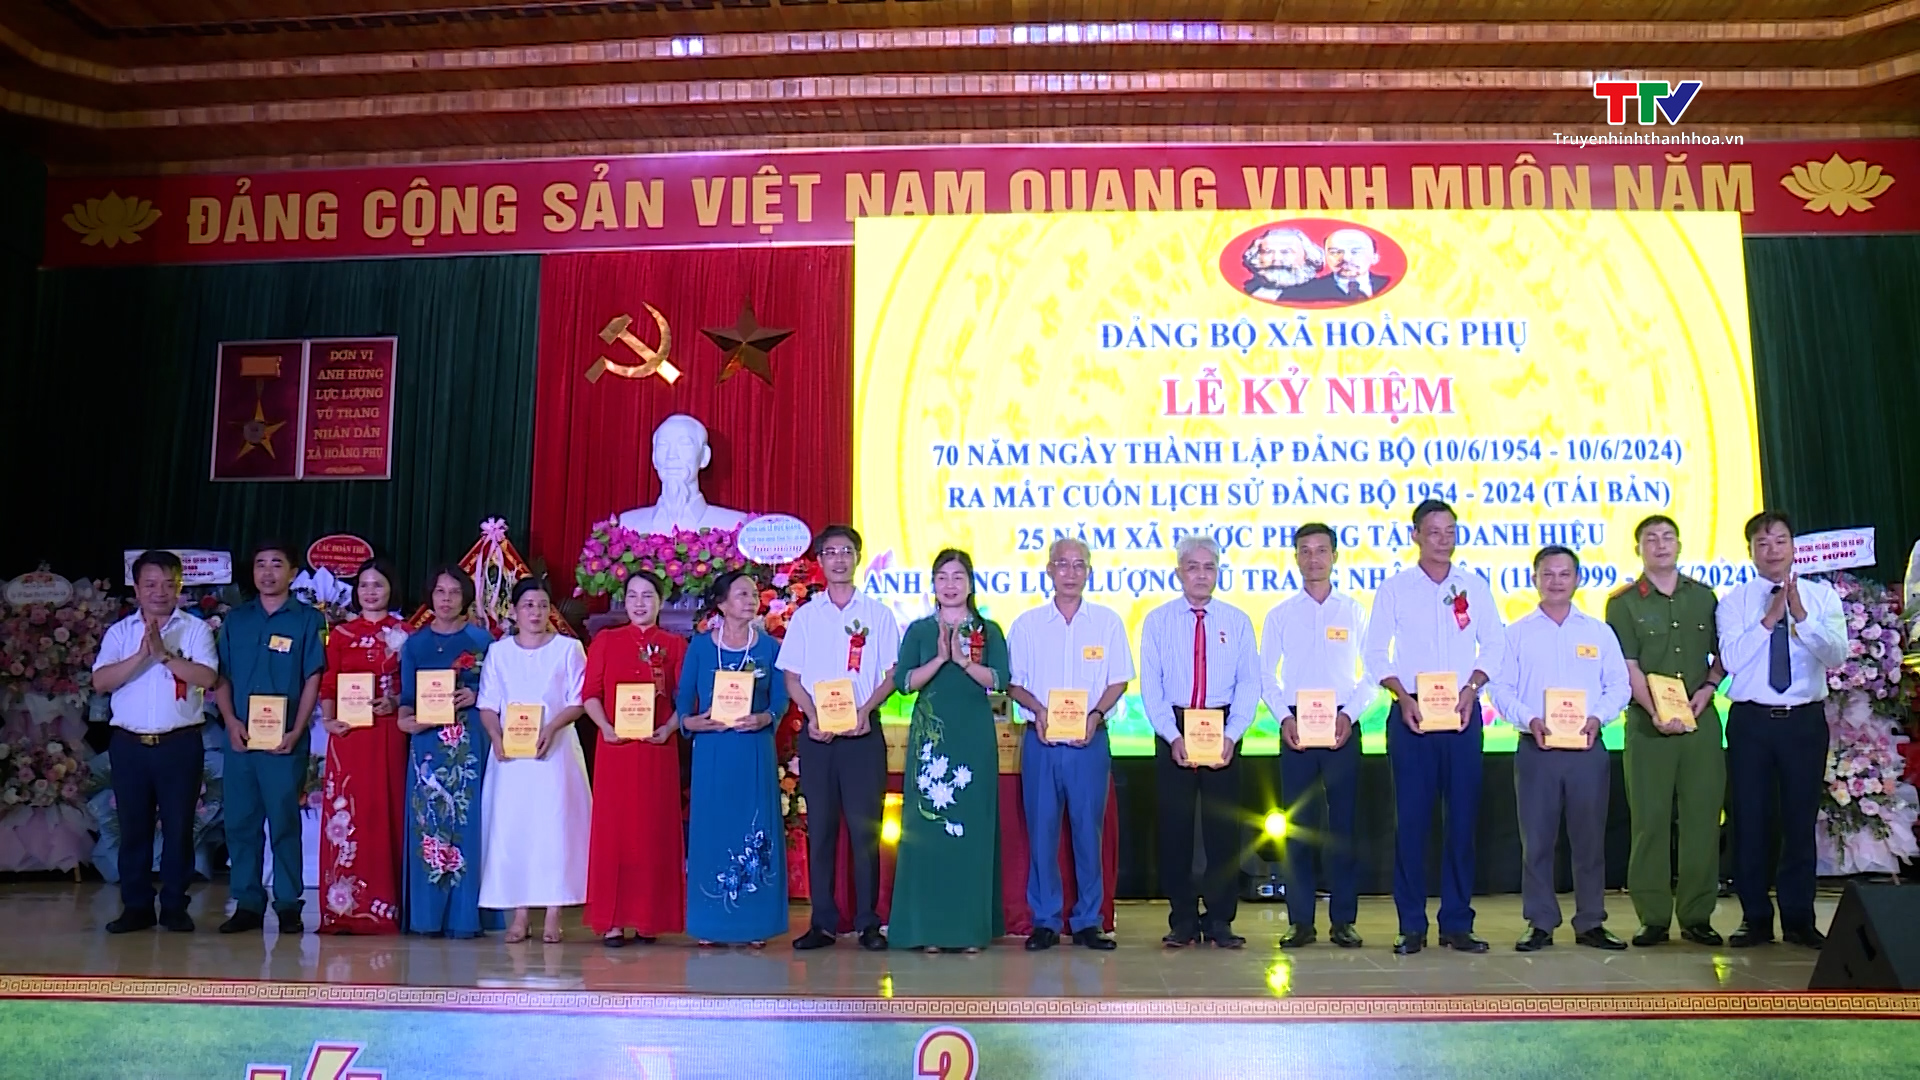 Đảng bộ xã Hoằng Phụ, huyện Hoằng Hoá kỷ niệm 70 năm ngày thành lập (1954 - 2024)- Ảnh 2.